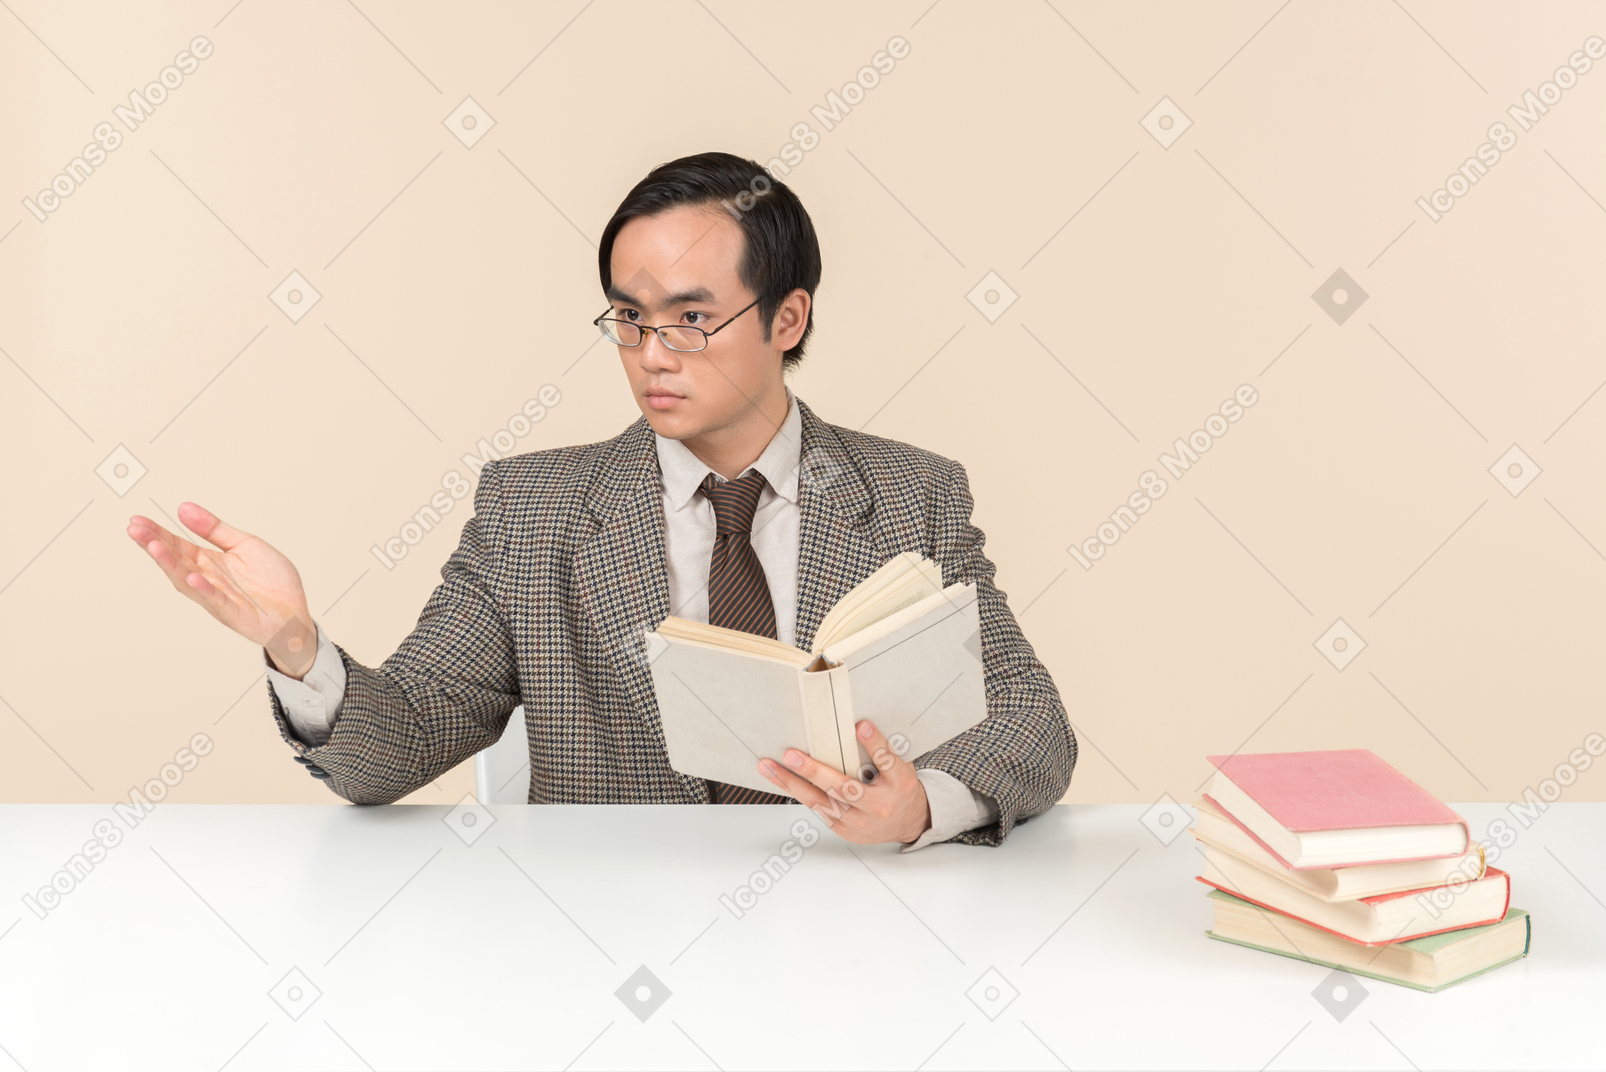 Un'insegnante asiatica con un abito a scacchi, una cravatta e un libro in mano, che lavora con la classe